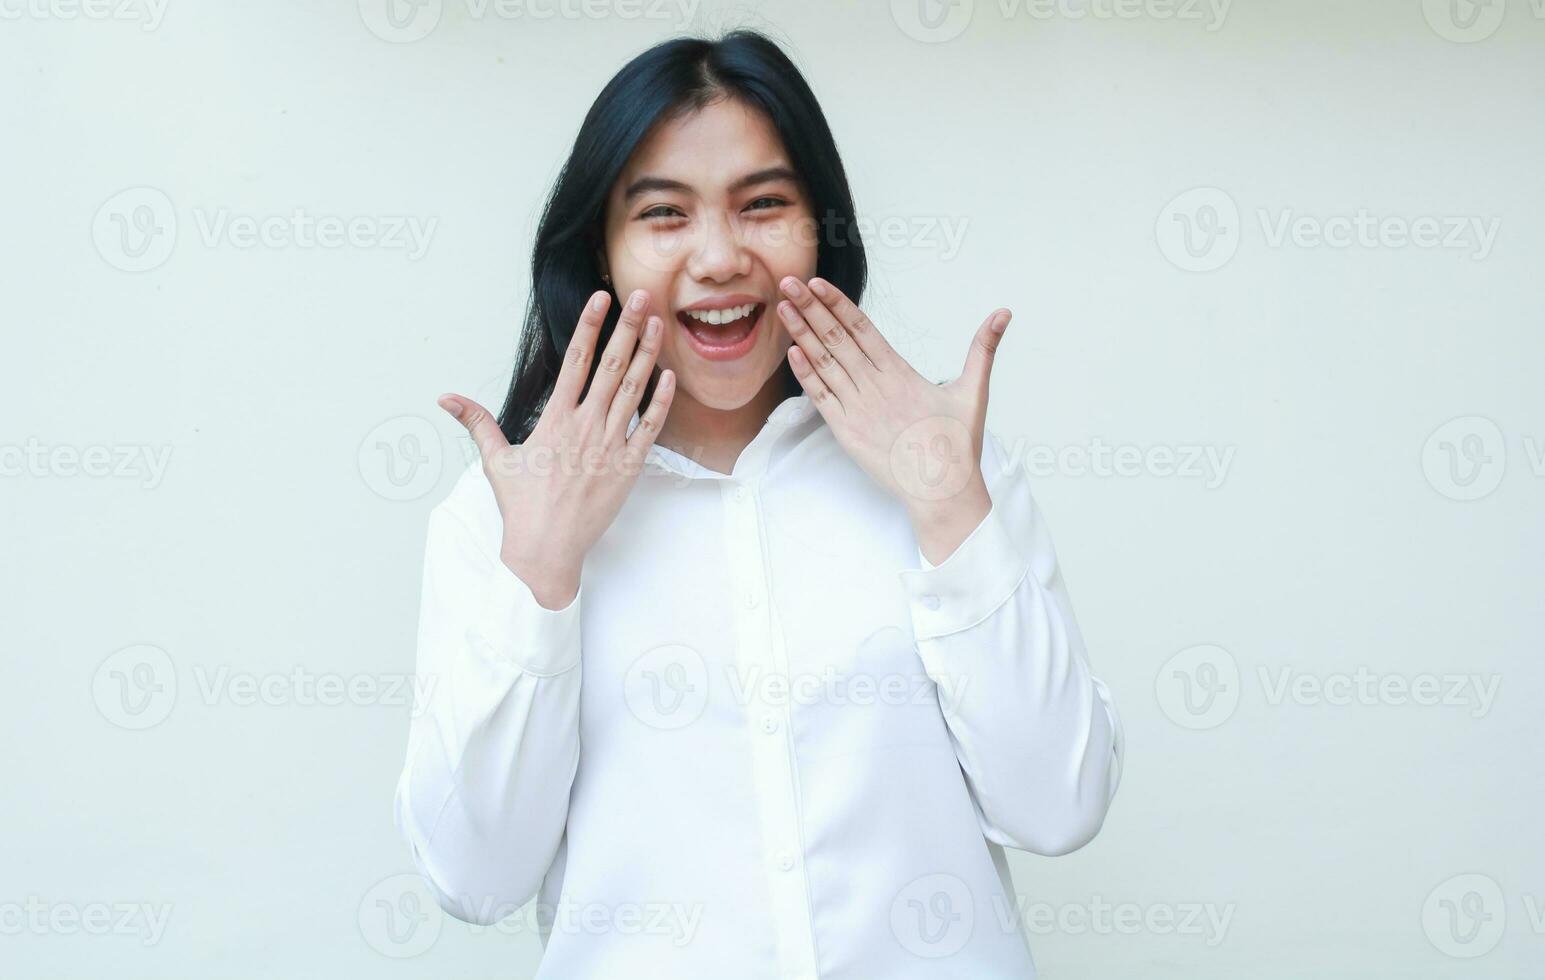 överraskad asiatisk företag kvinna skrikande på kamera chockade med höjning händer beläggning ansikte bär vit skjorta formell kostym stående över isolerat bakgrund foto